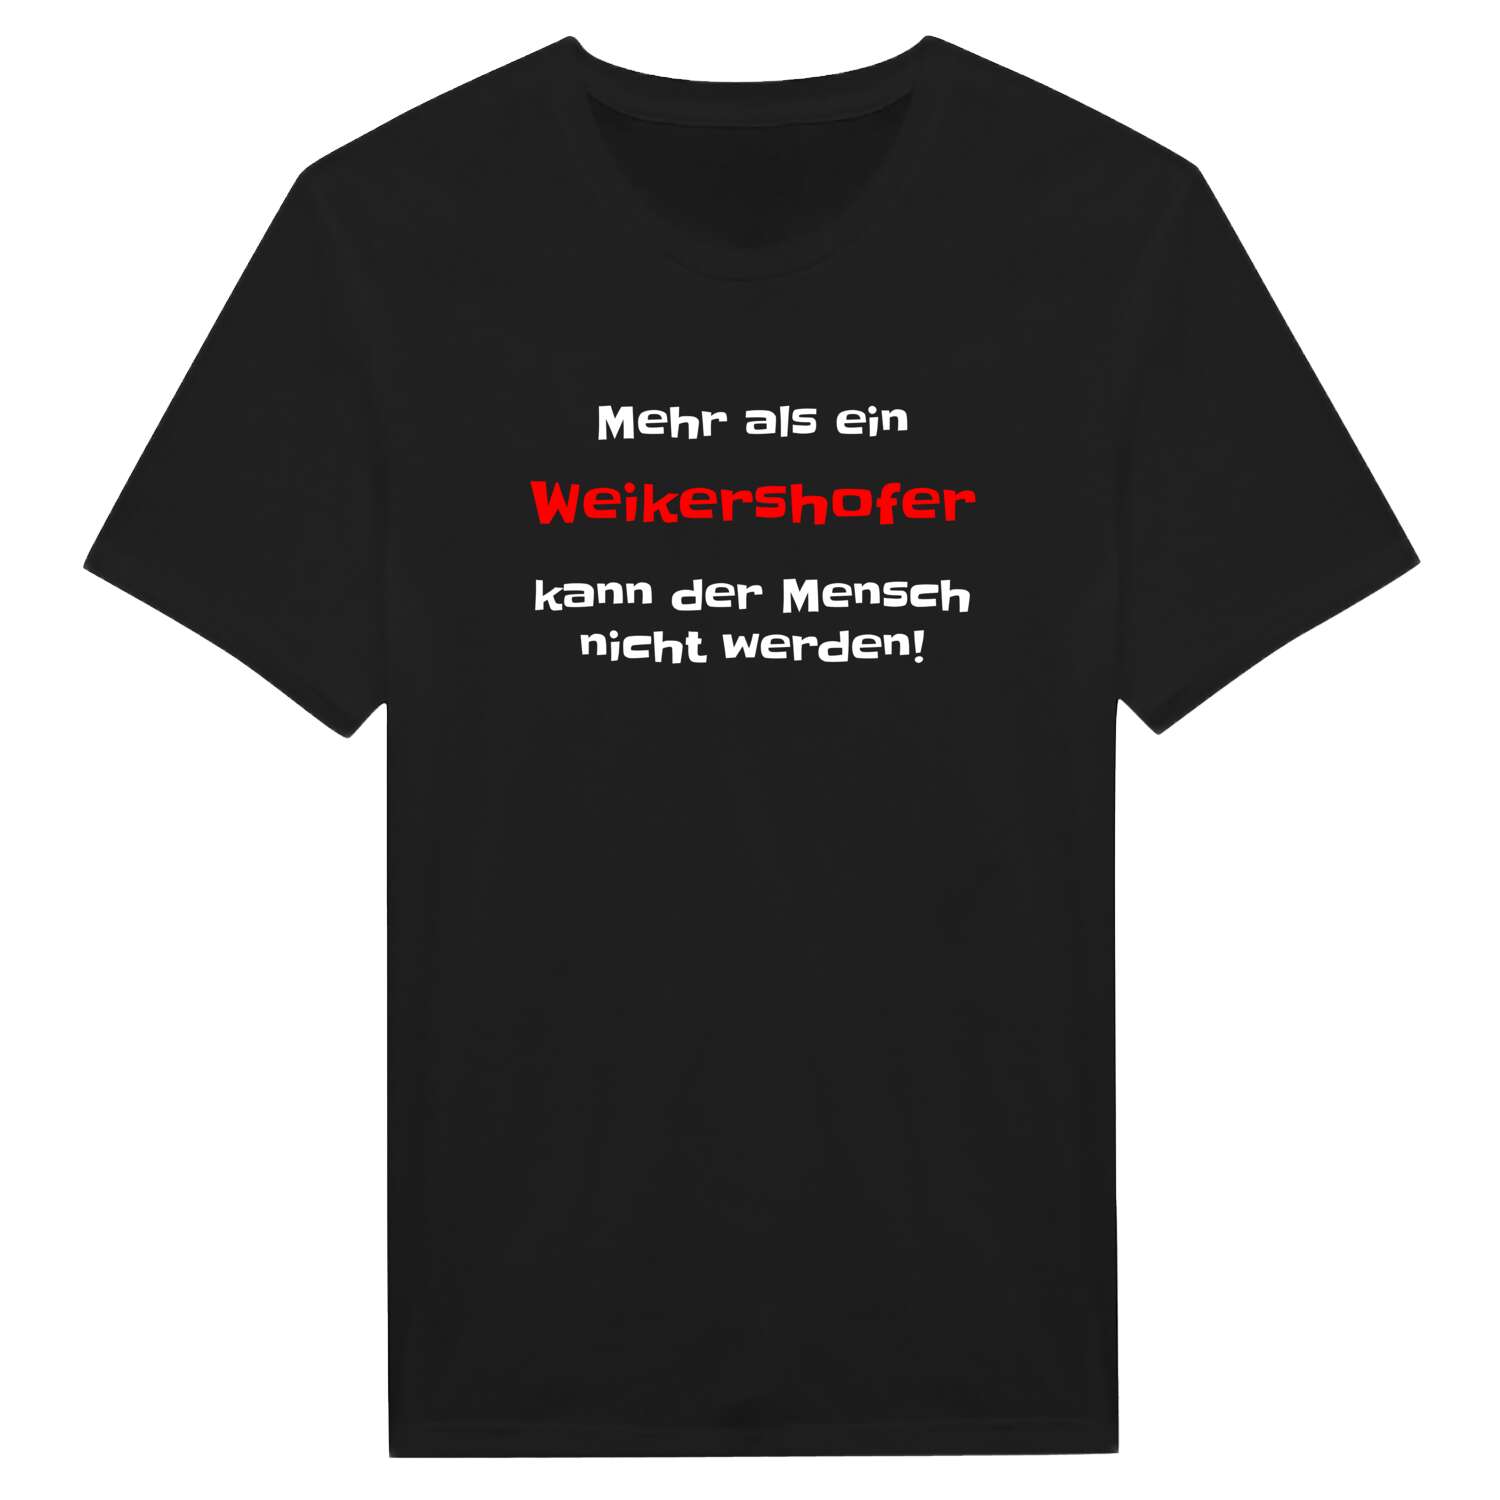 Weikershof T-Shirt »Mehr als ein«